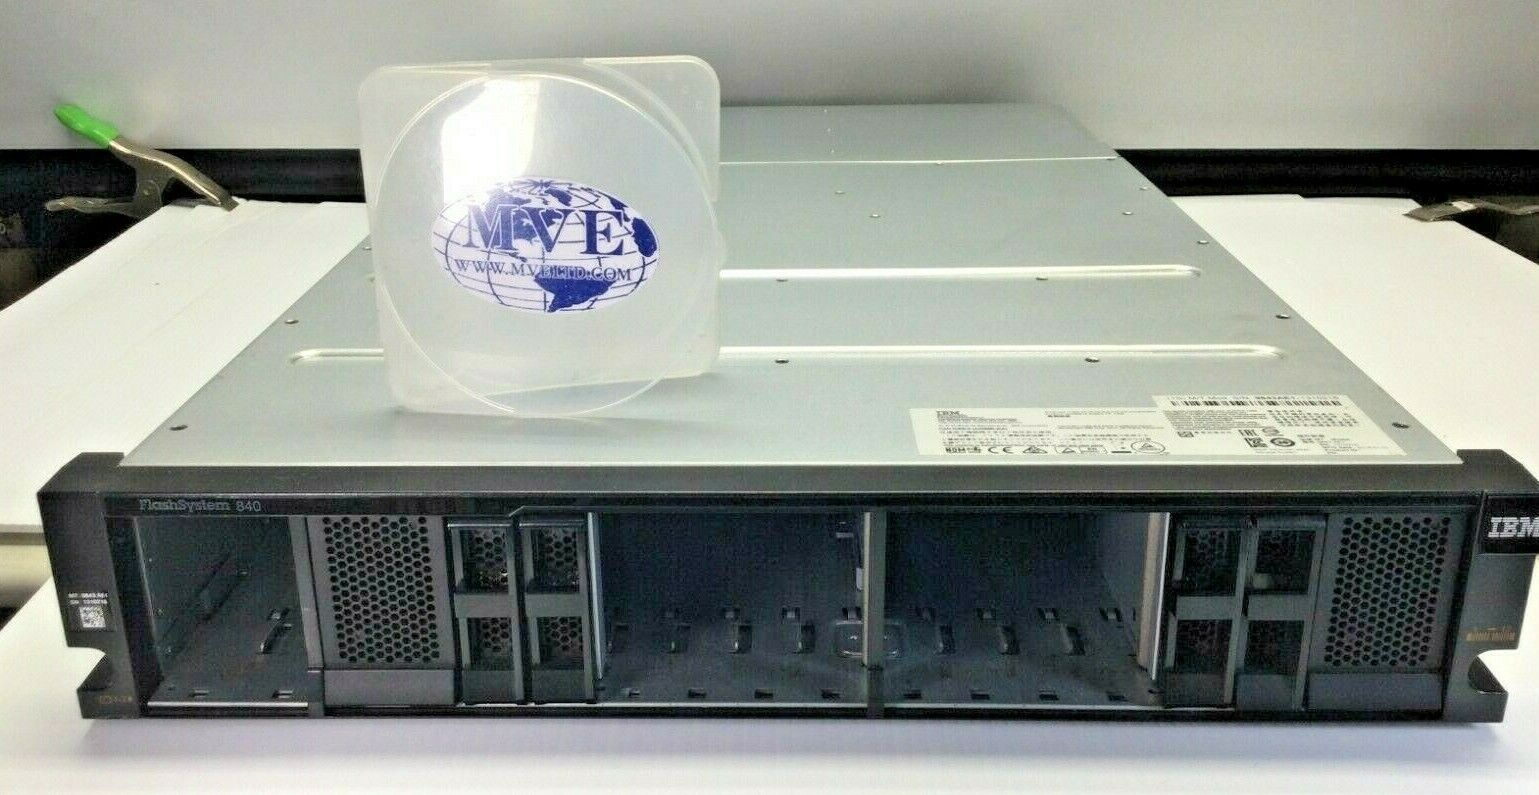 IBM 9843-AE1 FLASHSYSTEM 840 00DJ160 94Y8073 94Y8072 FLASH STORAGE ARRAY CHASSIS